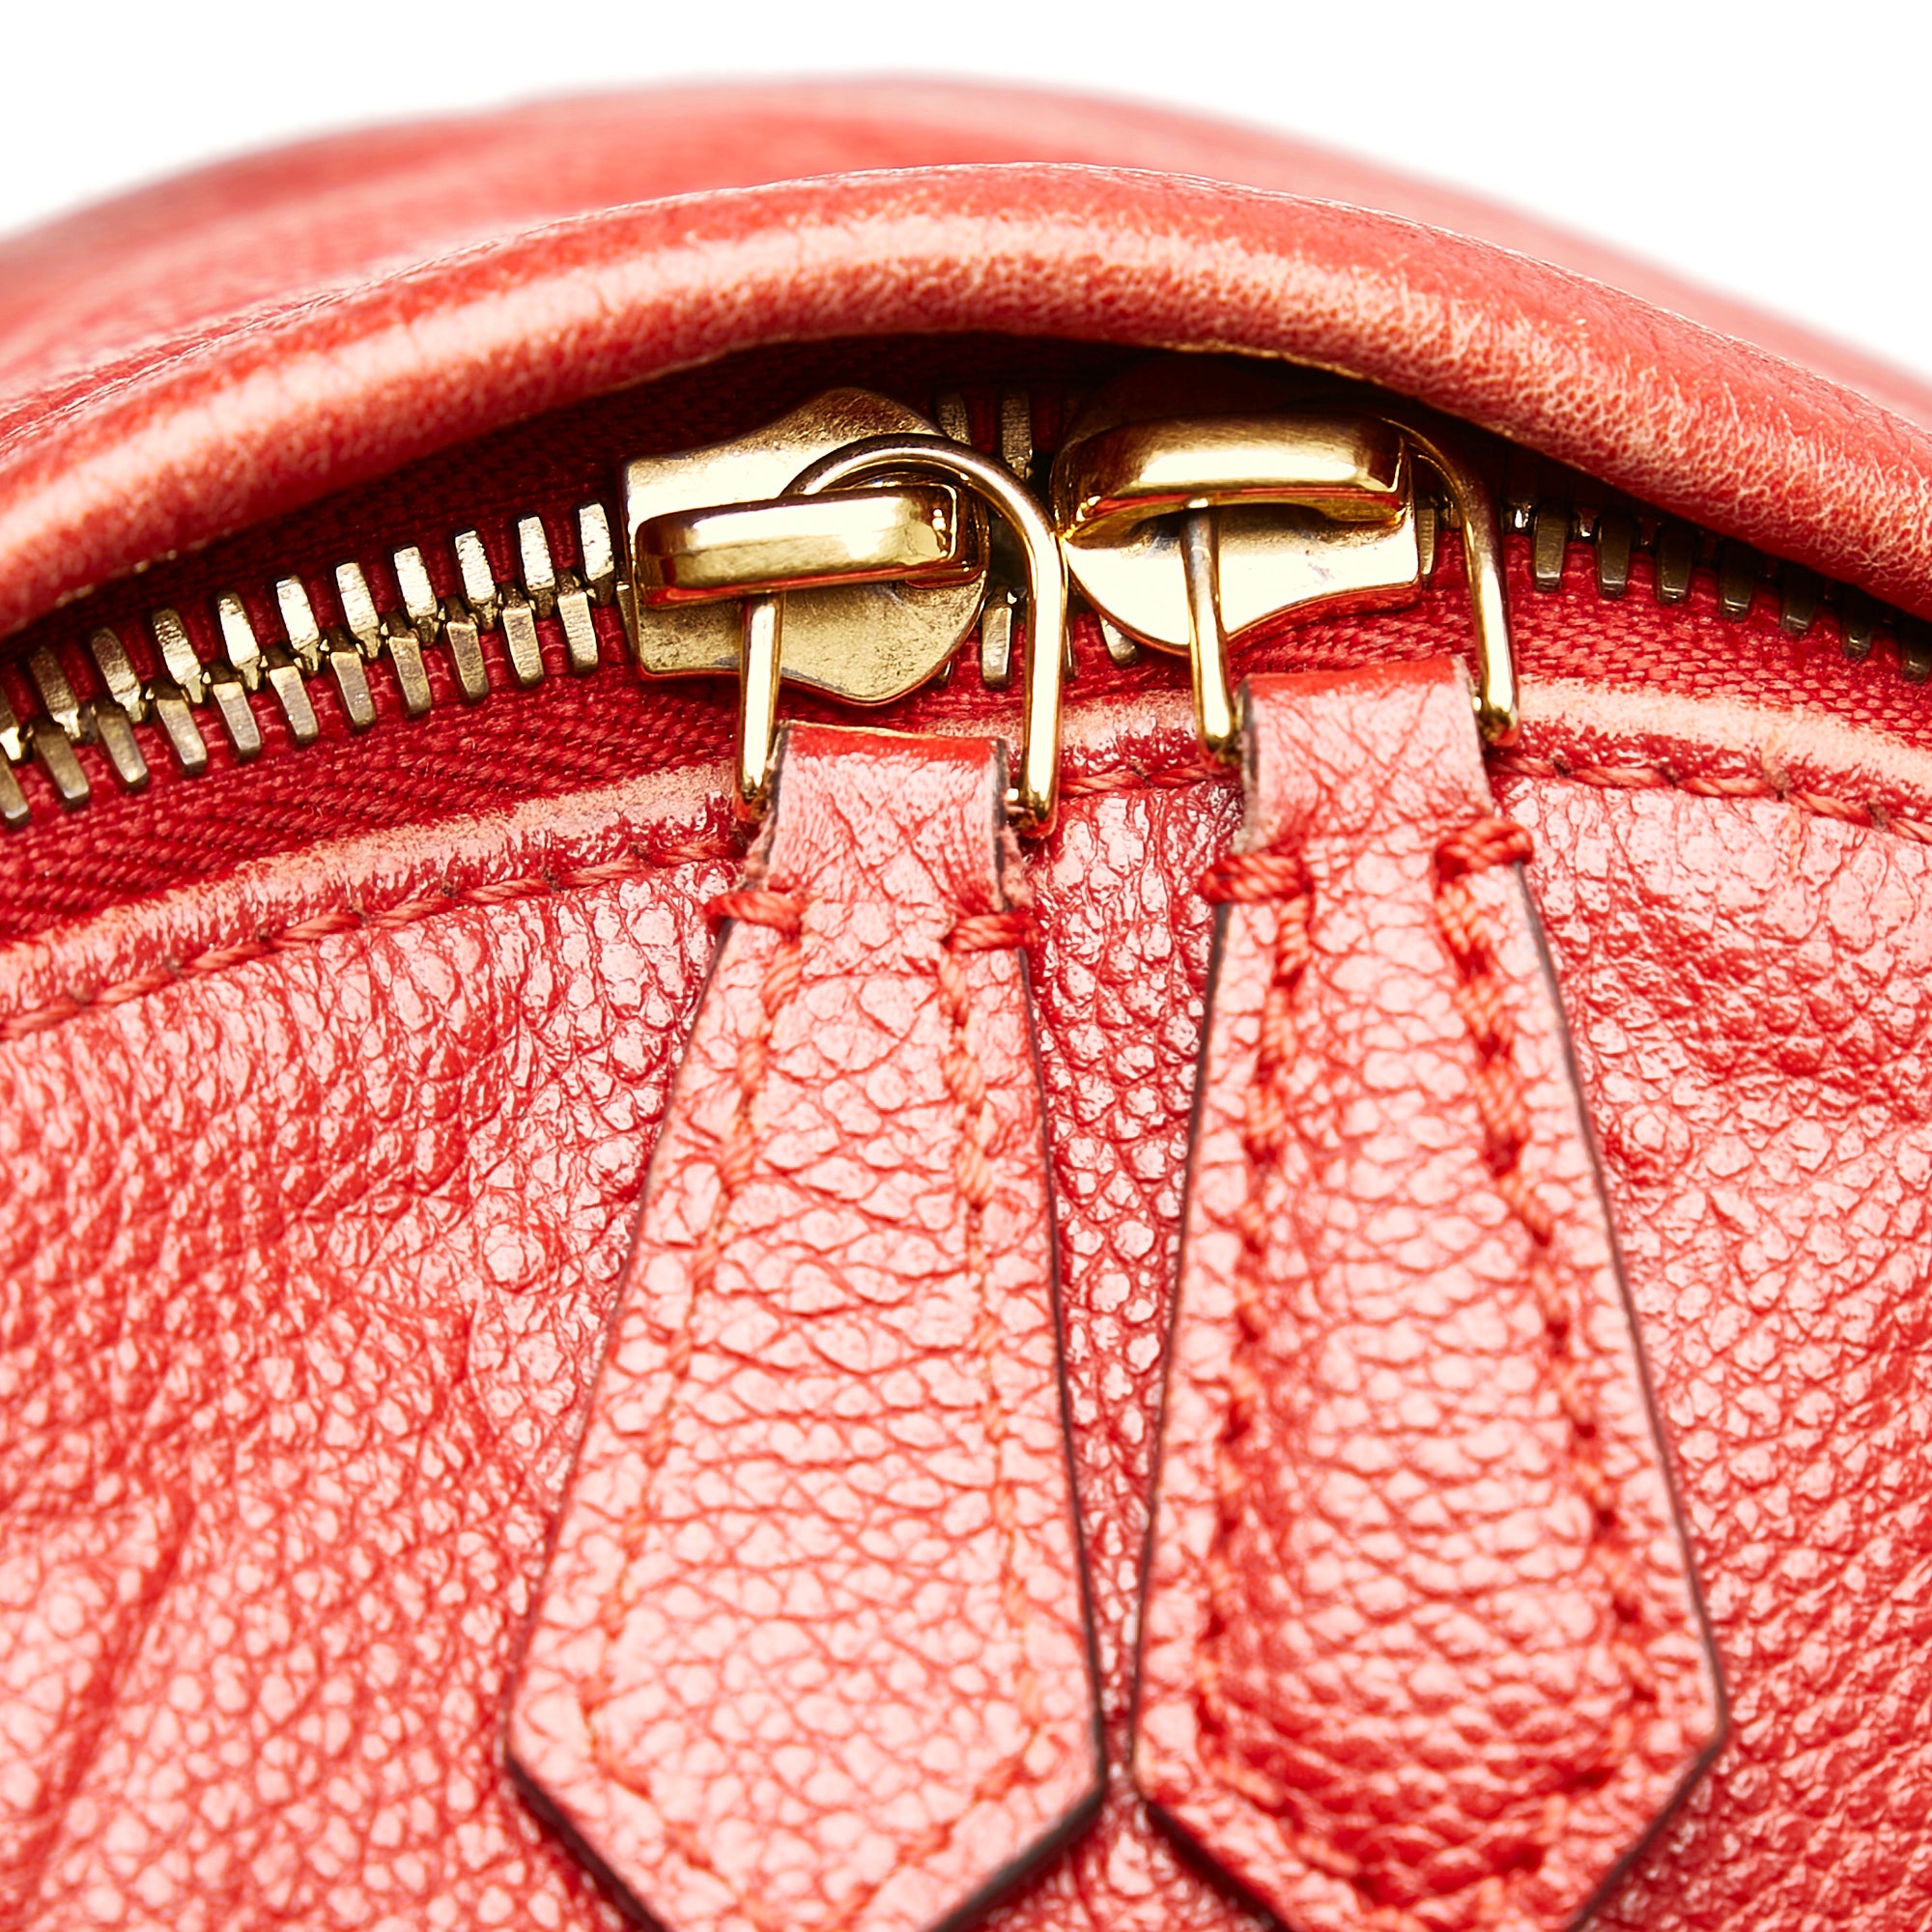 Louis Vuitton Cerise Empreinte Sarbonne Leather Backpack